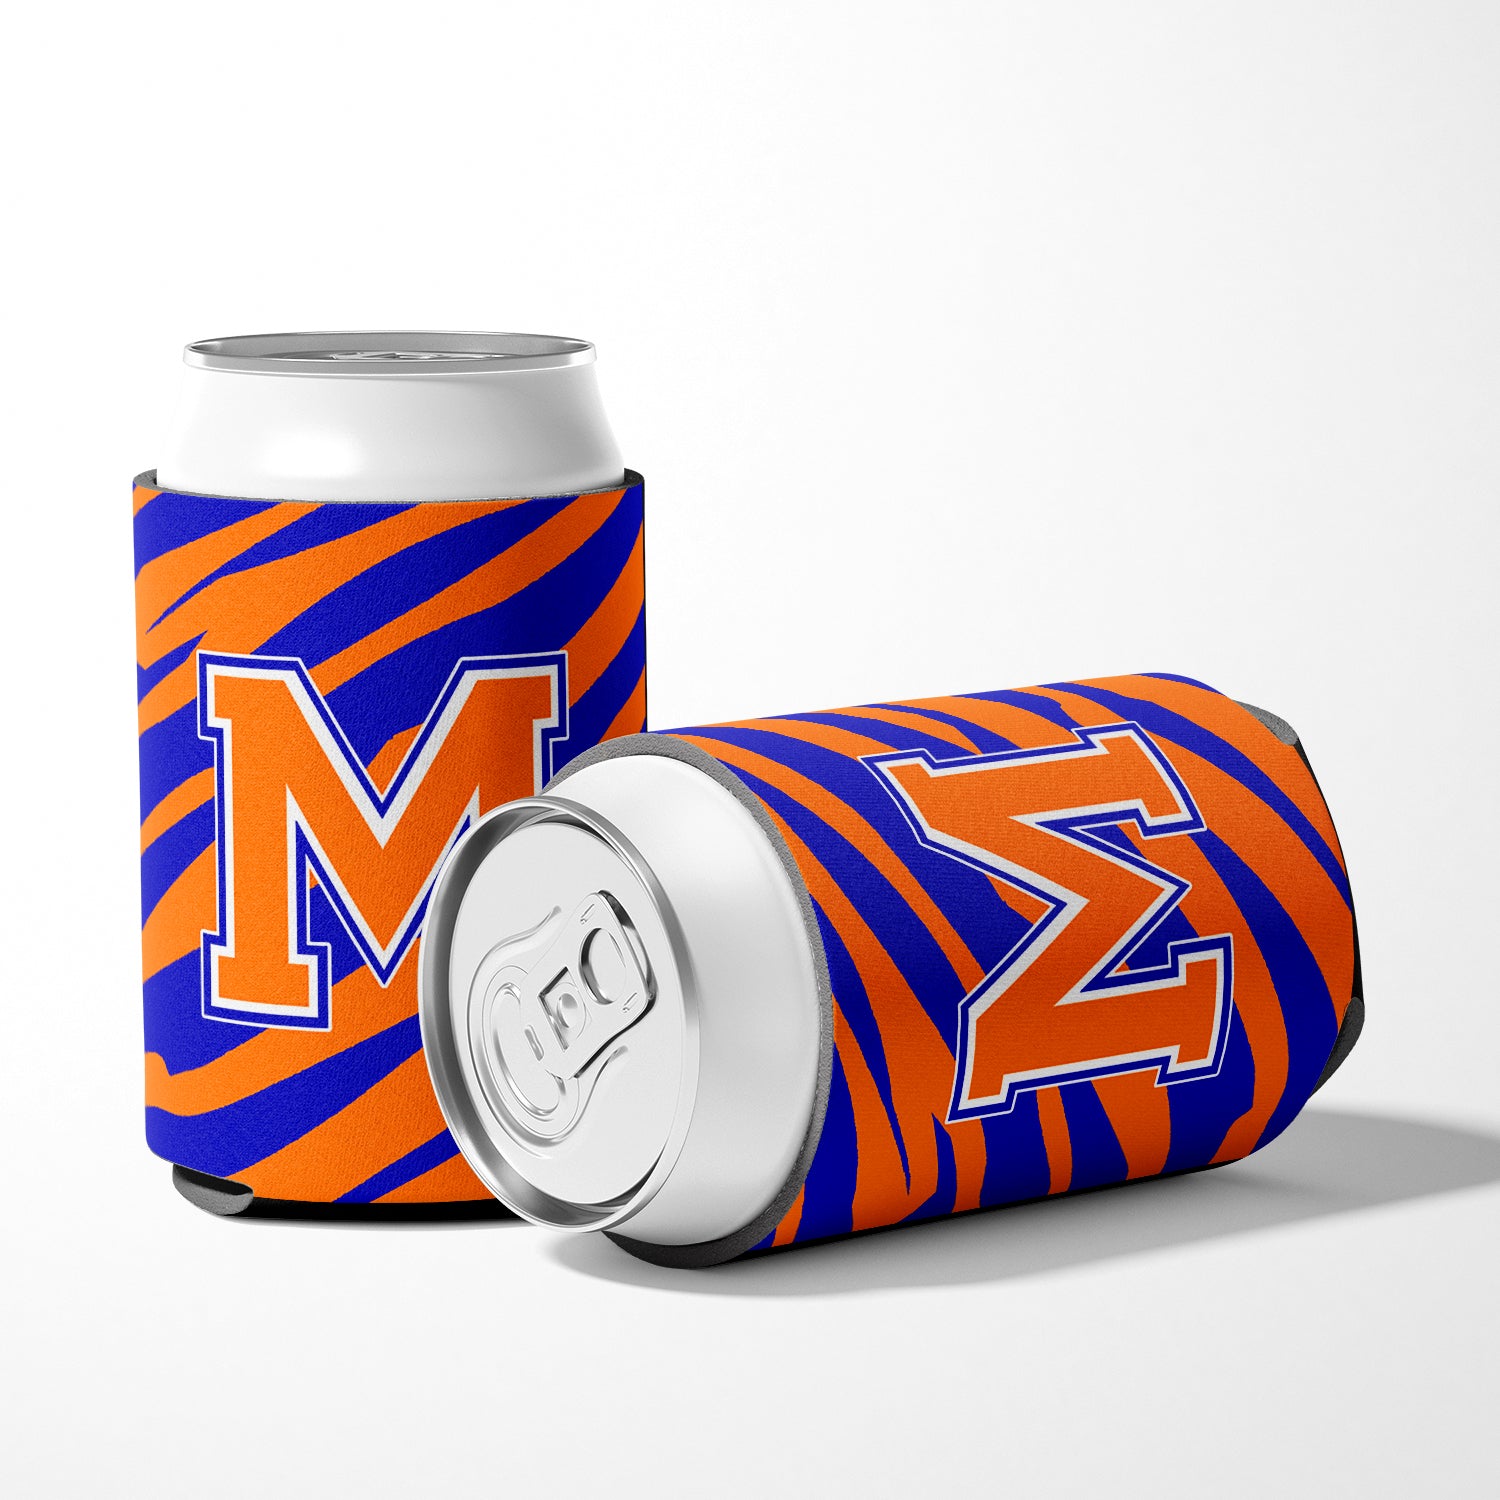 Letter M Initial Monogram Tiger Stripe Blue Orange Can or Bottle Beverage Insulator Hugger